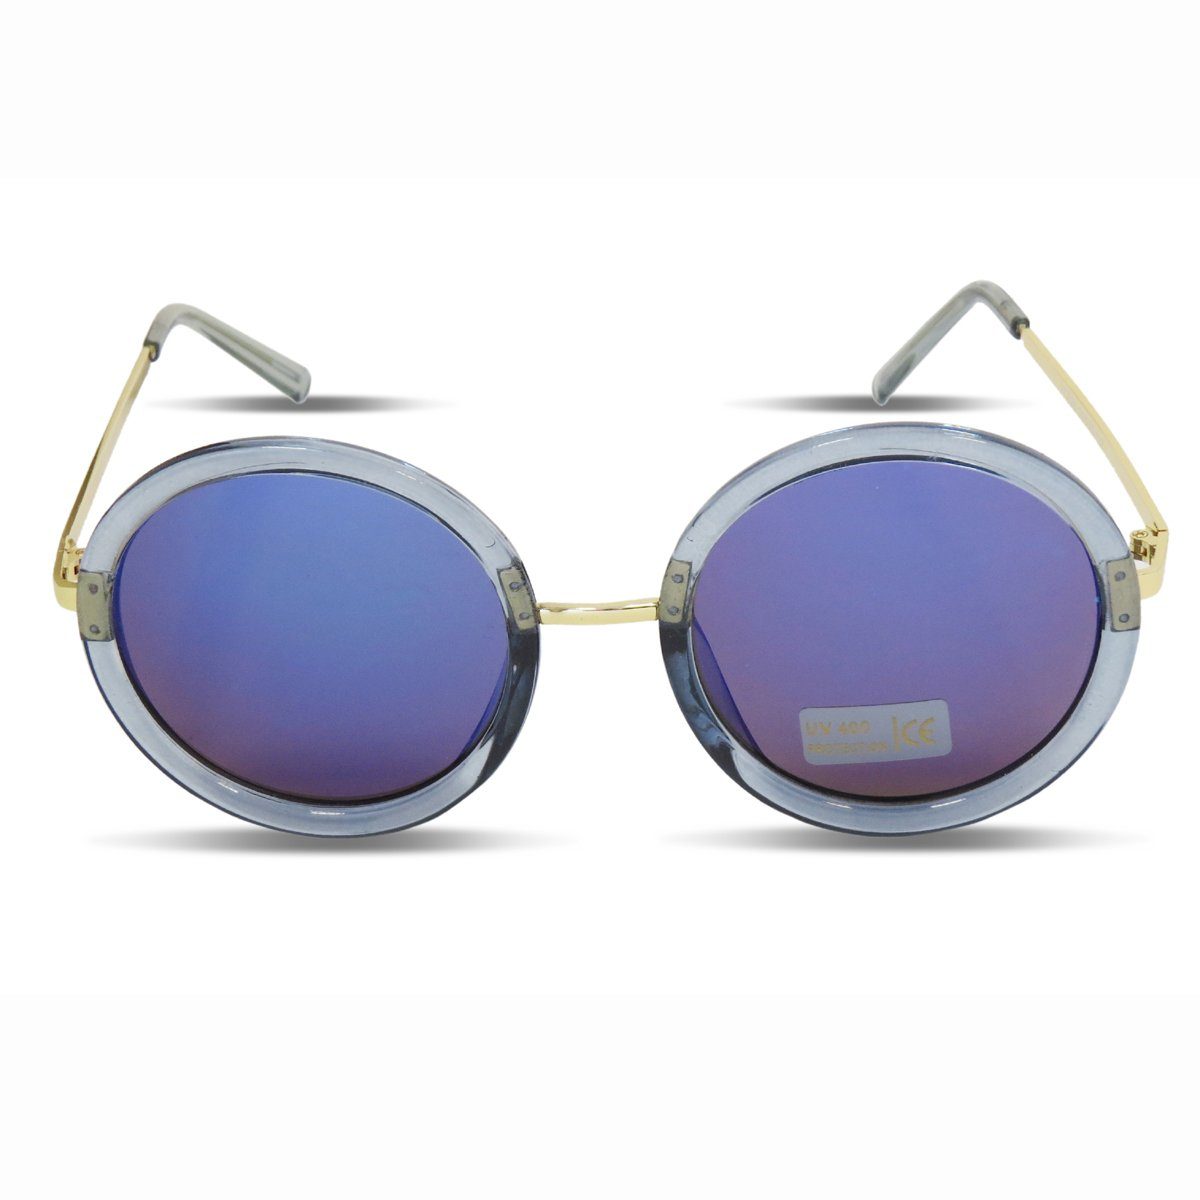 Sonia Originelli blau Damen Sonnenbrille Verspiegelt Sonnenbrille Onesize Rund Trend Sommer